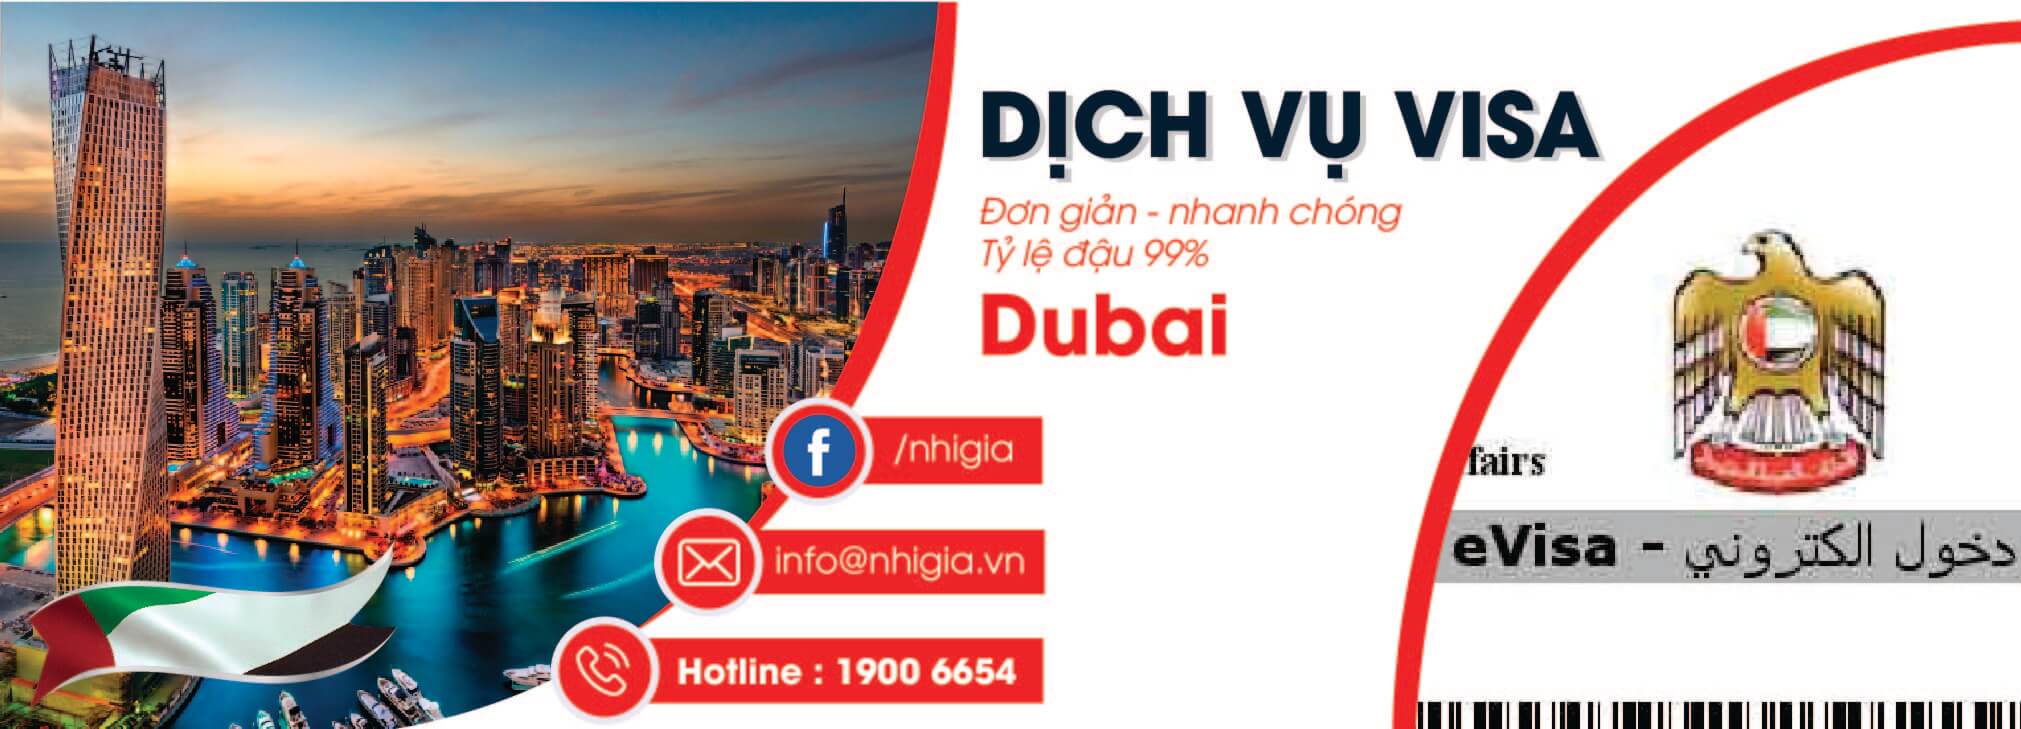 Nhị Gia - đơn vị hỗ trợ dịch vụ làm hồ sơ và thủ tục xin visa Dubai nhanh chóng, tiết kiệm